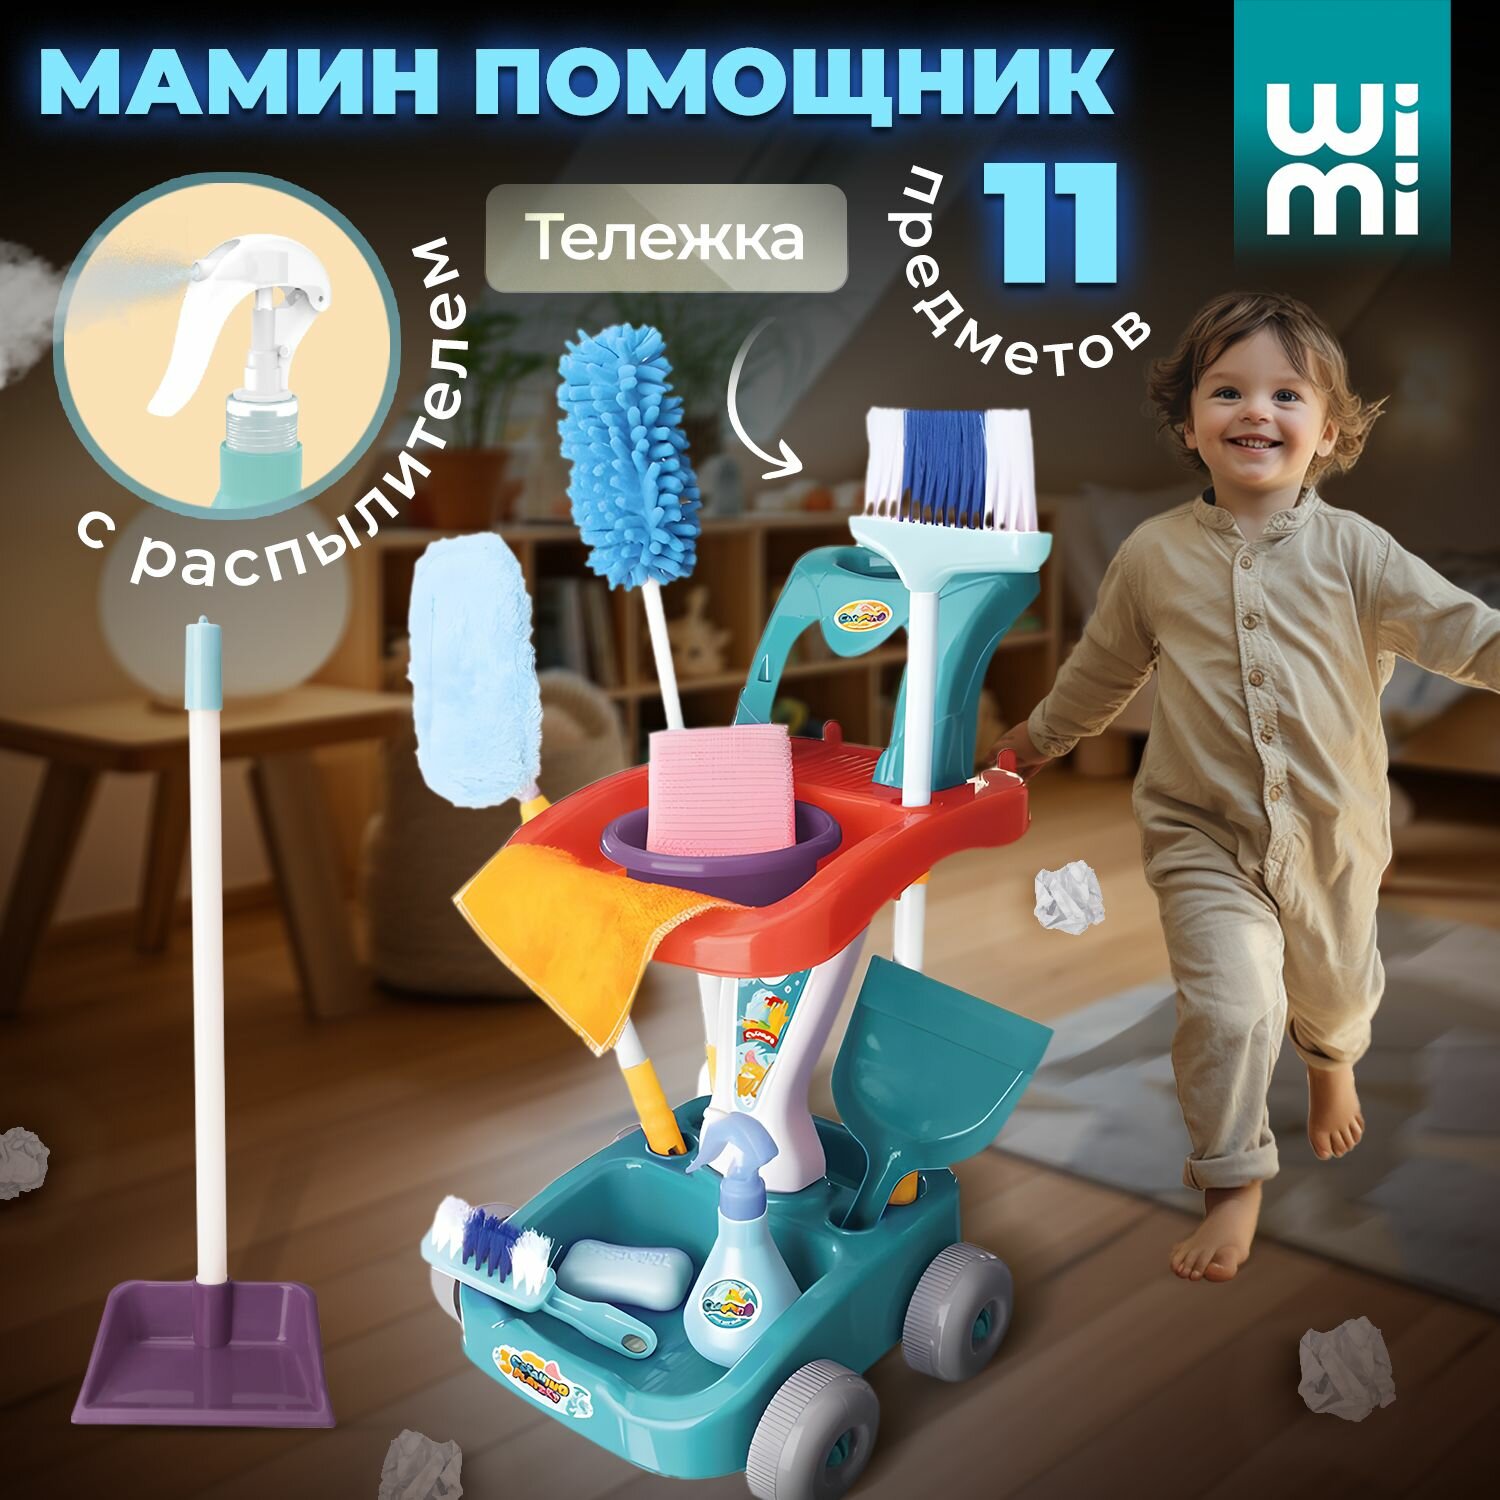 Набор для уборки детский WiMi, швабра игрушка и пластиковый совок в комплекте